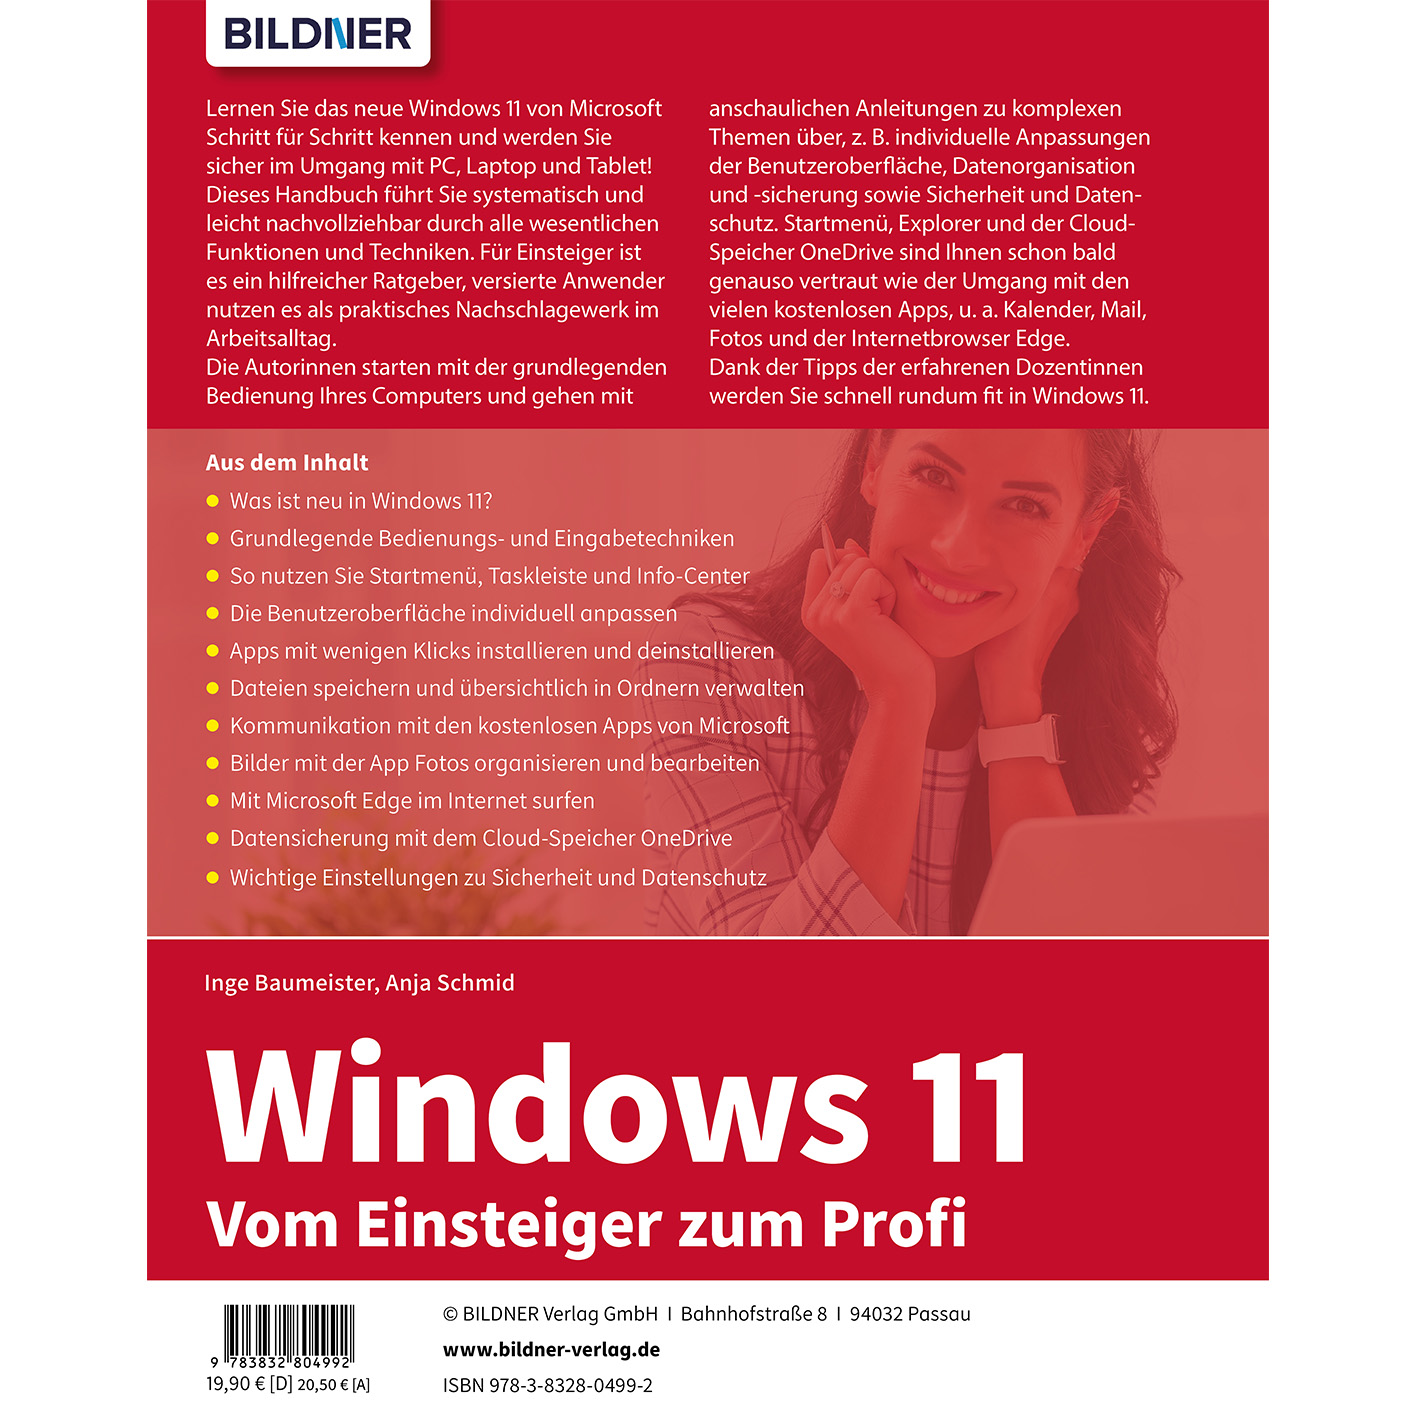 Windows 11 - zum Einsteiger Vom Profi